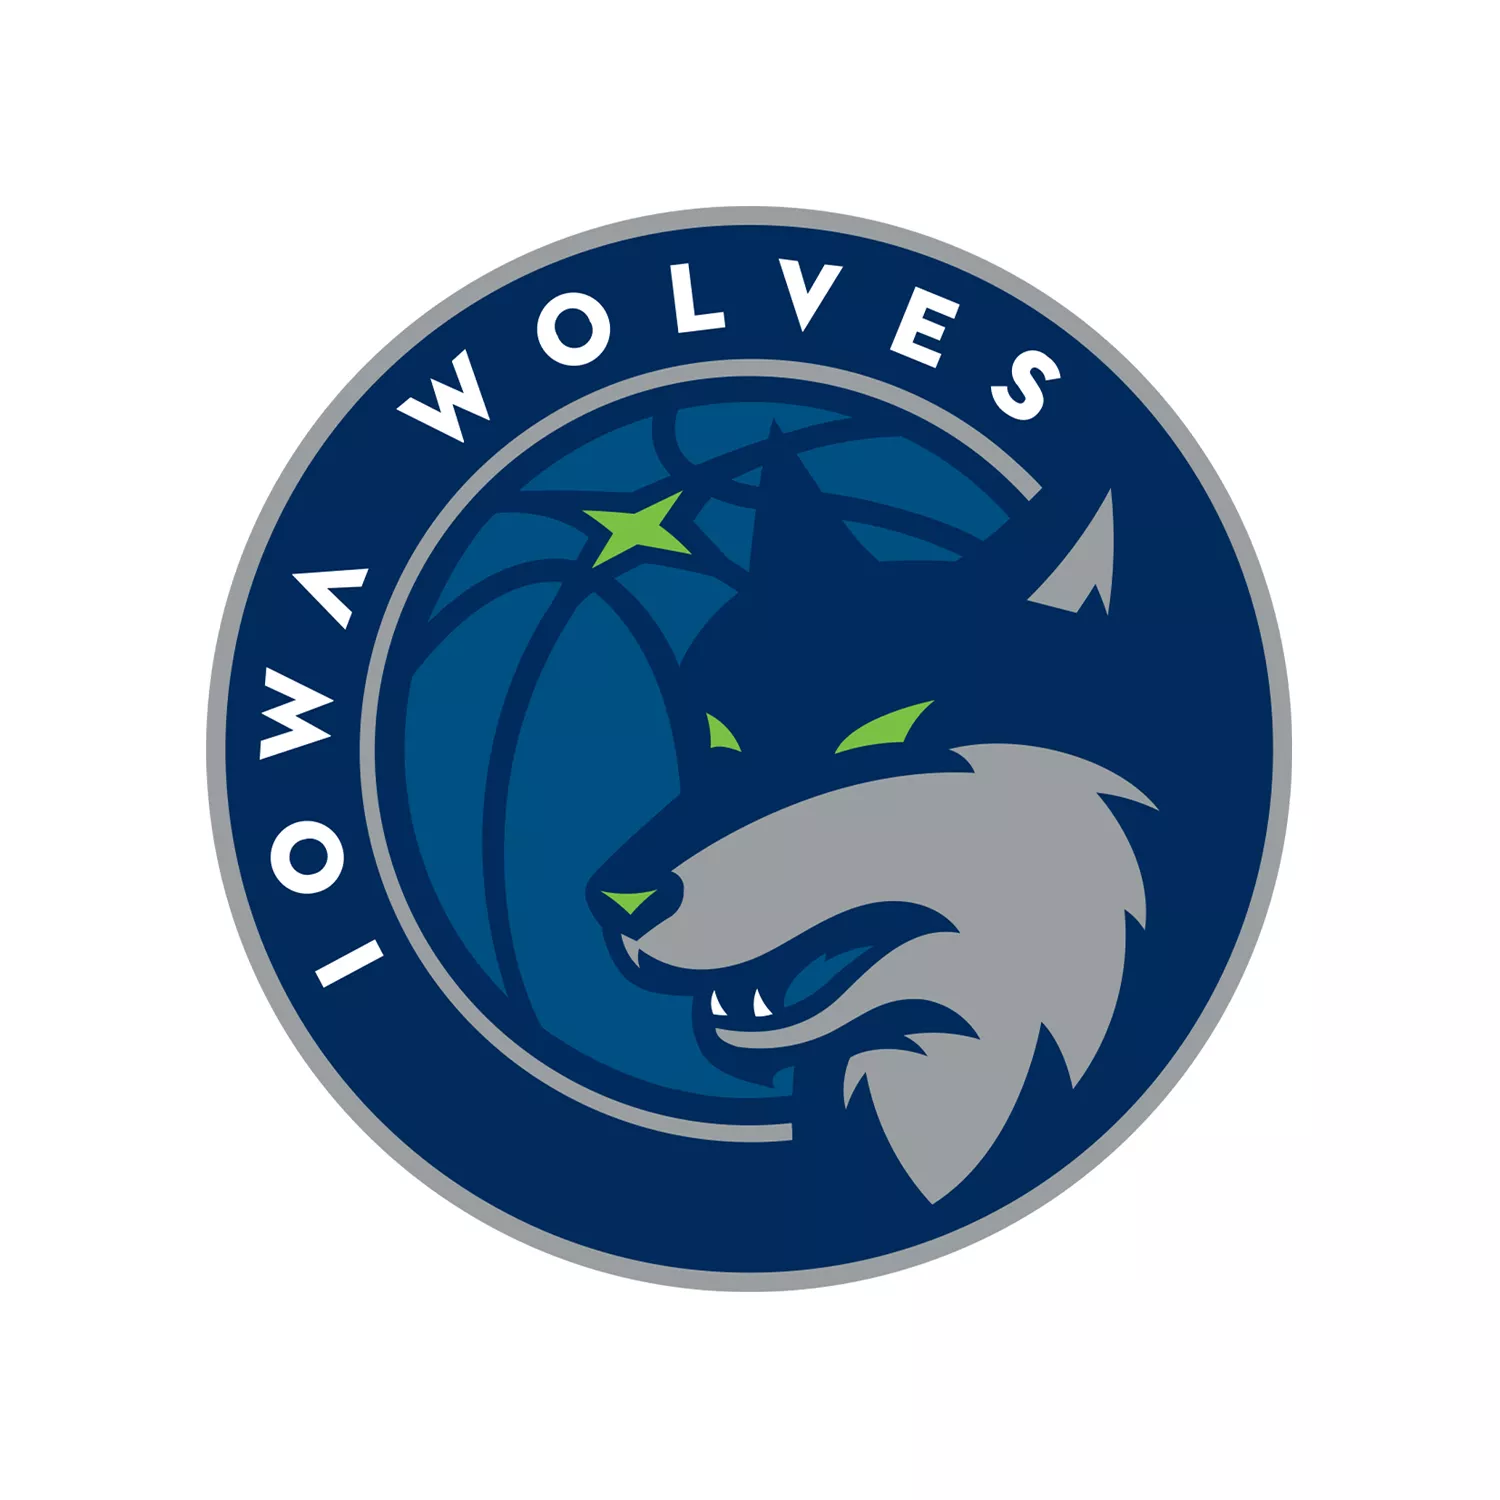 Iowa Wolves logo